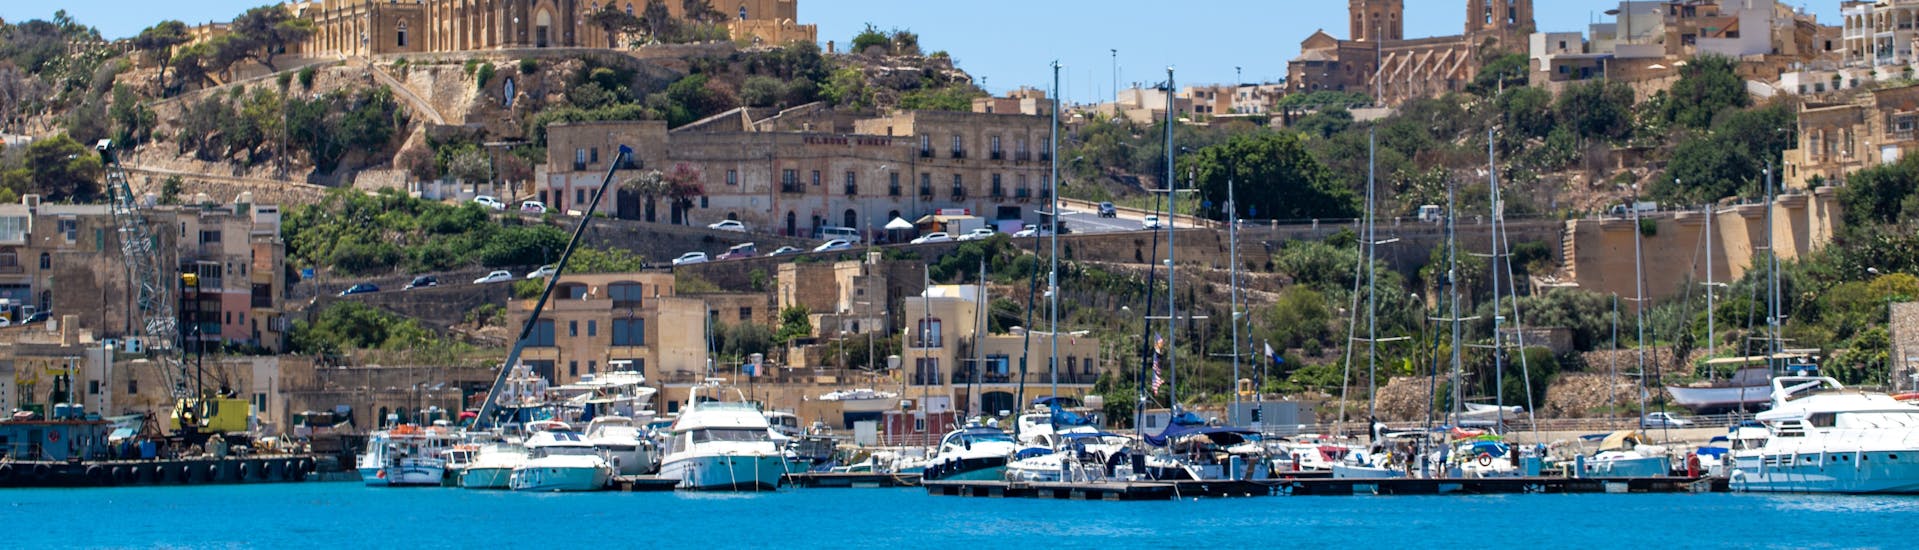 Uitzicht op Gozo vanaf de boot tijdens de Boottocht naar Gozo, Comino & St Paul's Islands met Mermaid Cruises Malta.